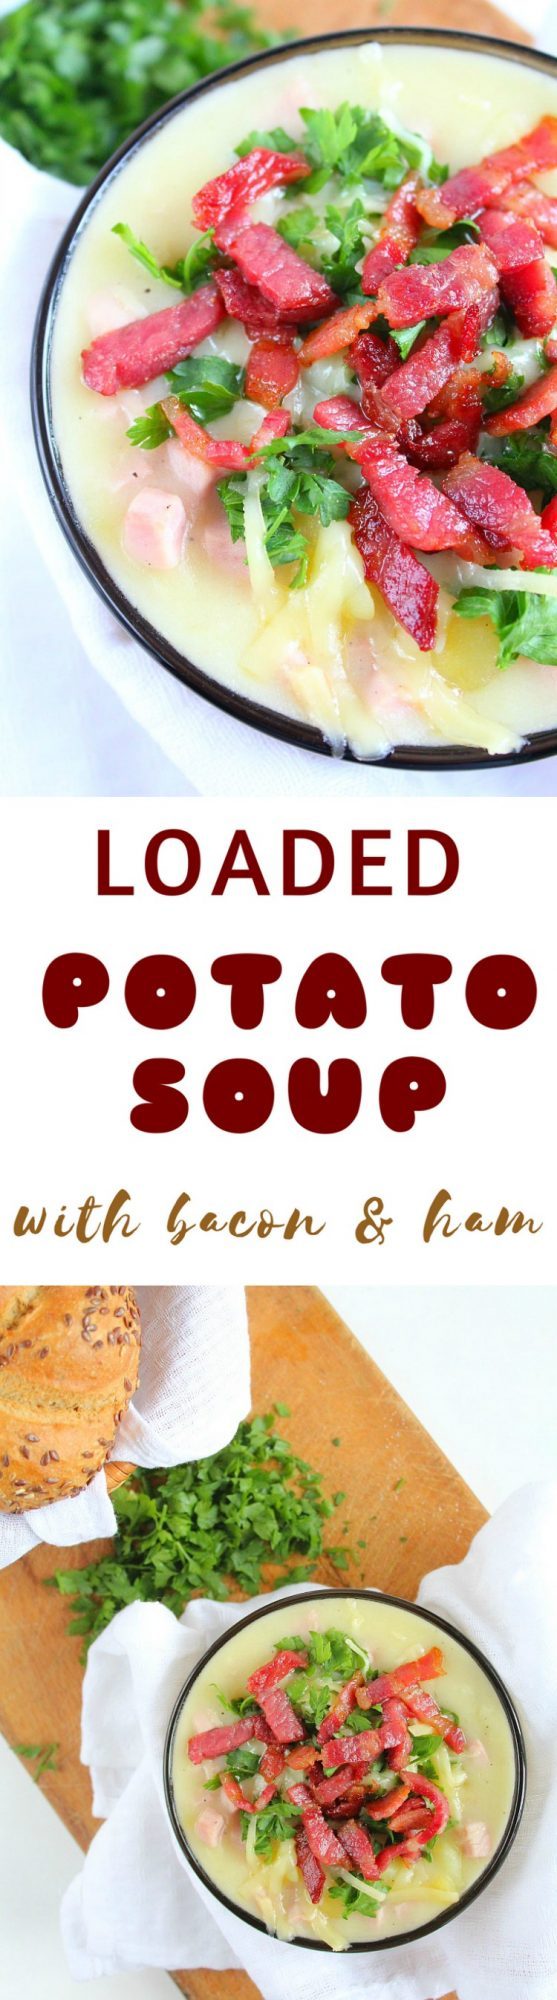 Loaded potato soup recipe